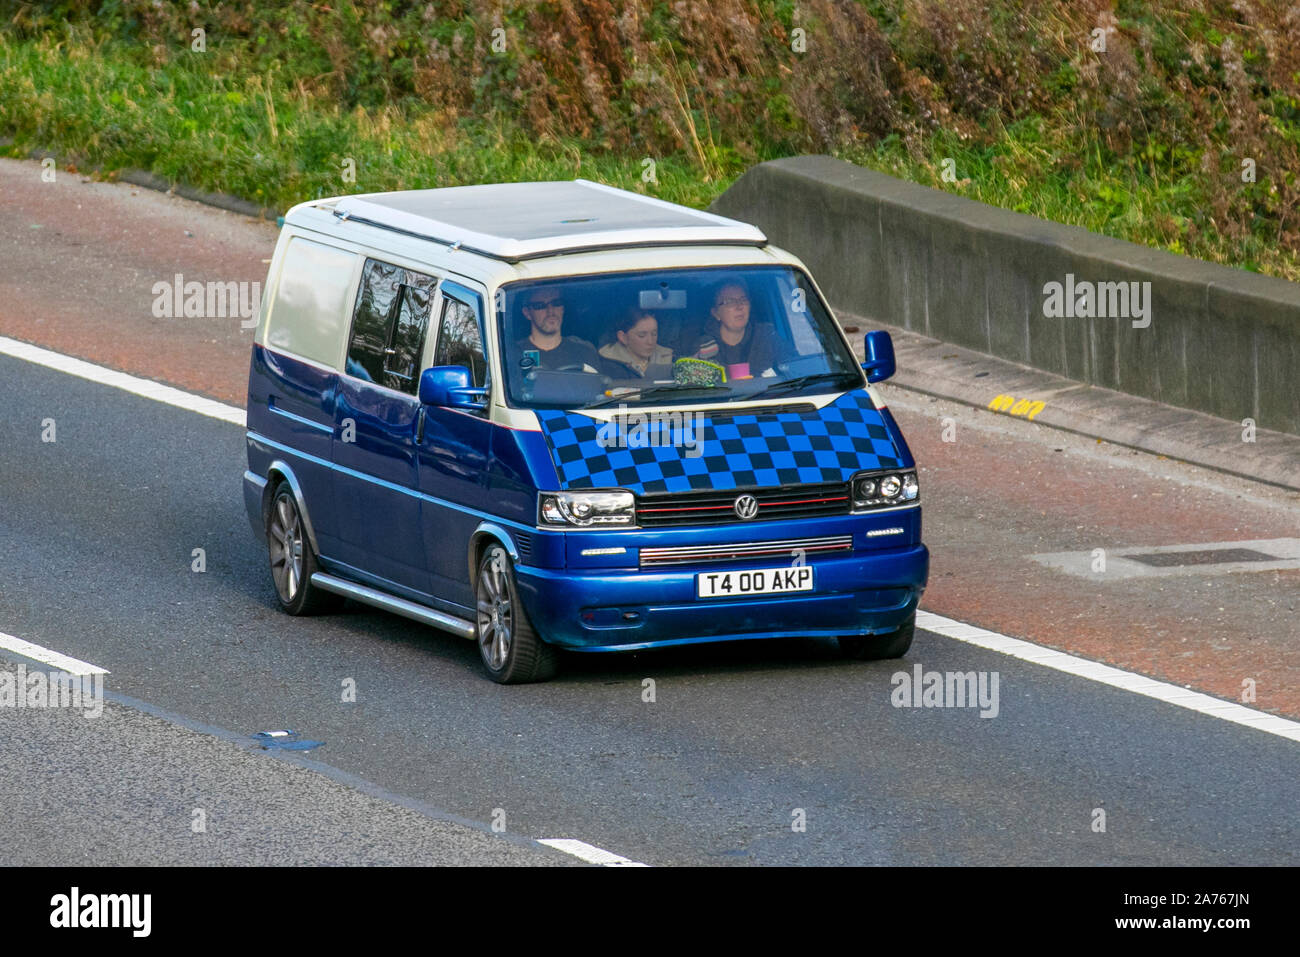 2001 Volkswagen Transporter VW bleu ; UK le trafic de véhicules, transports, véhicules modernes, voitures, vers le sud sur la voie 3 de l'autoroute M6. Banque D'Images